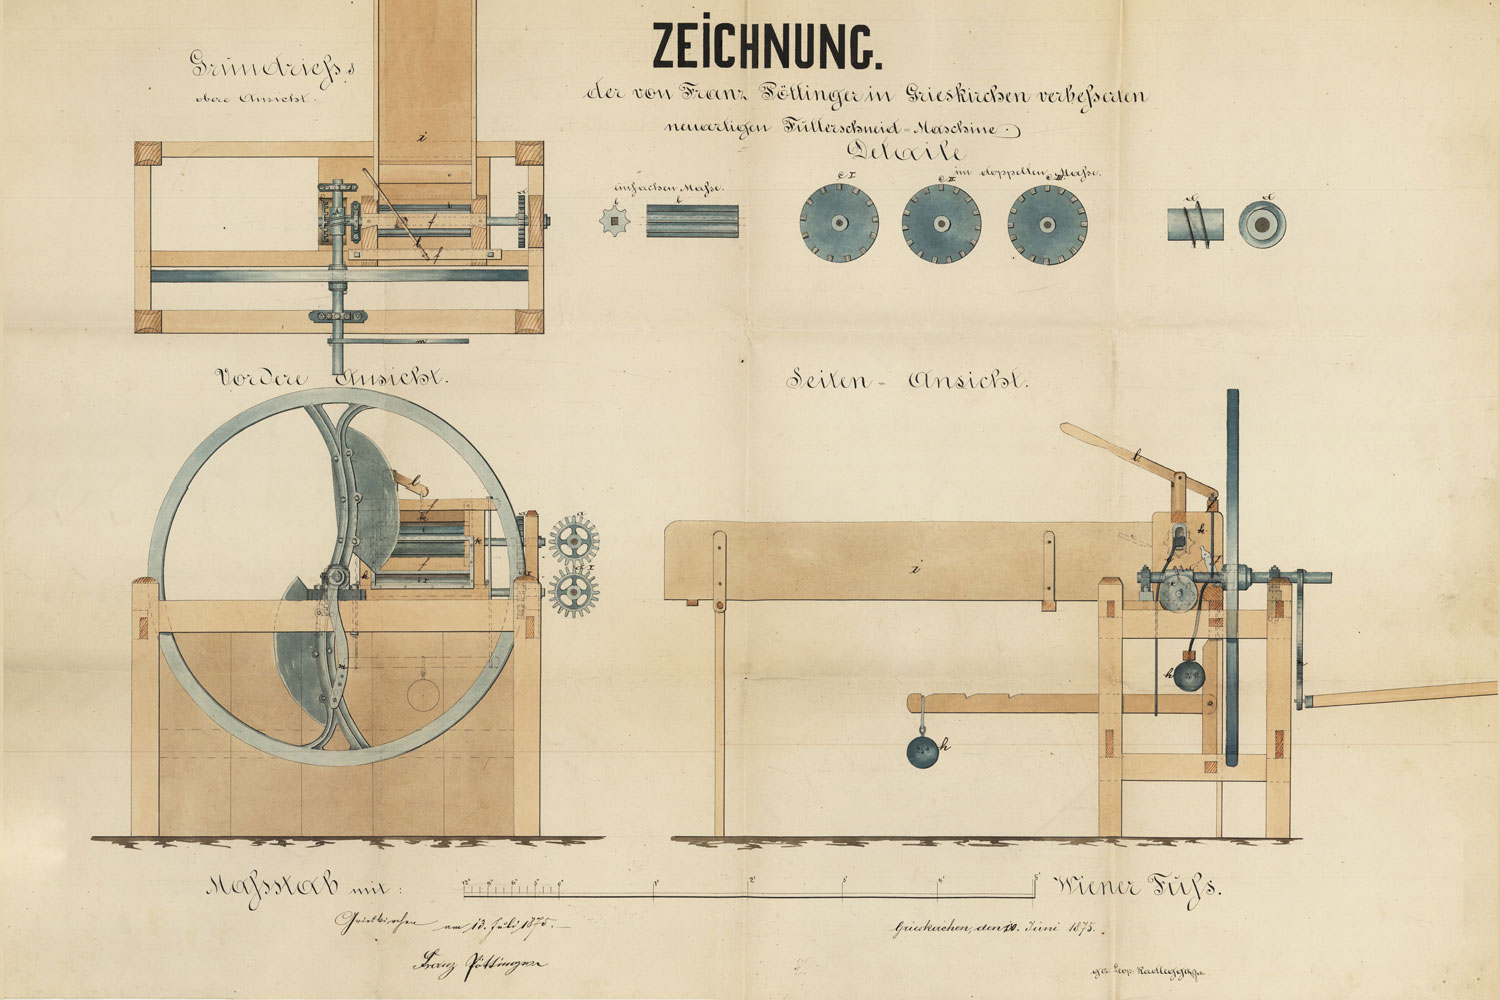 1875 Das erste Patent